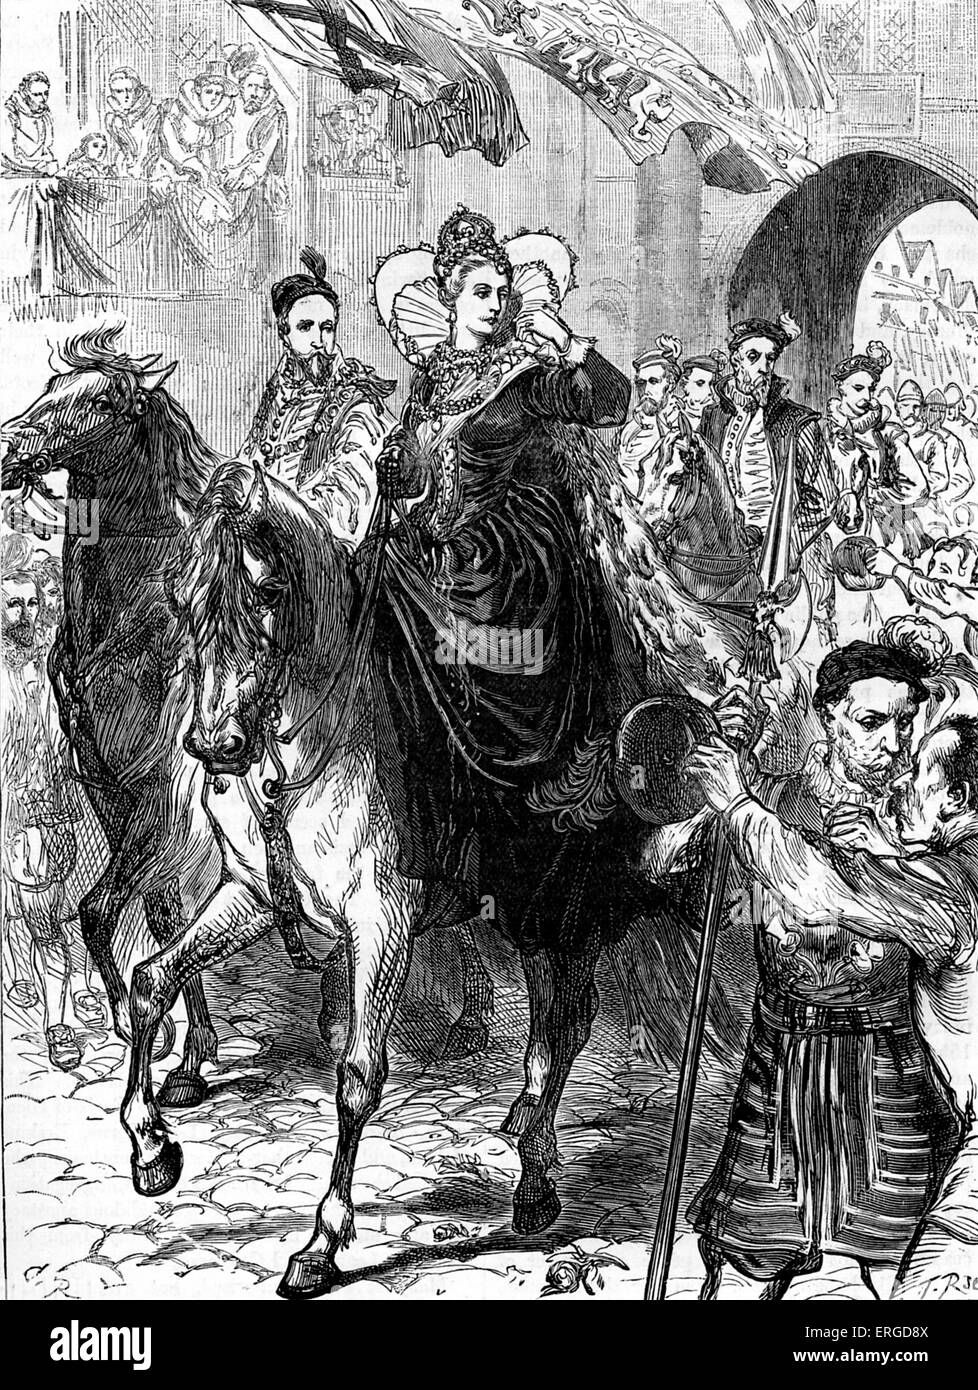 La reina Elizabeth I entra en Londres, el 23 de diciembre de 1558. A caballo acompañado por su corte. Reina de Inglaterra e Irlanda. Foto de stock